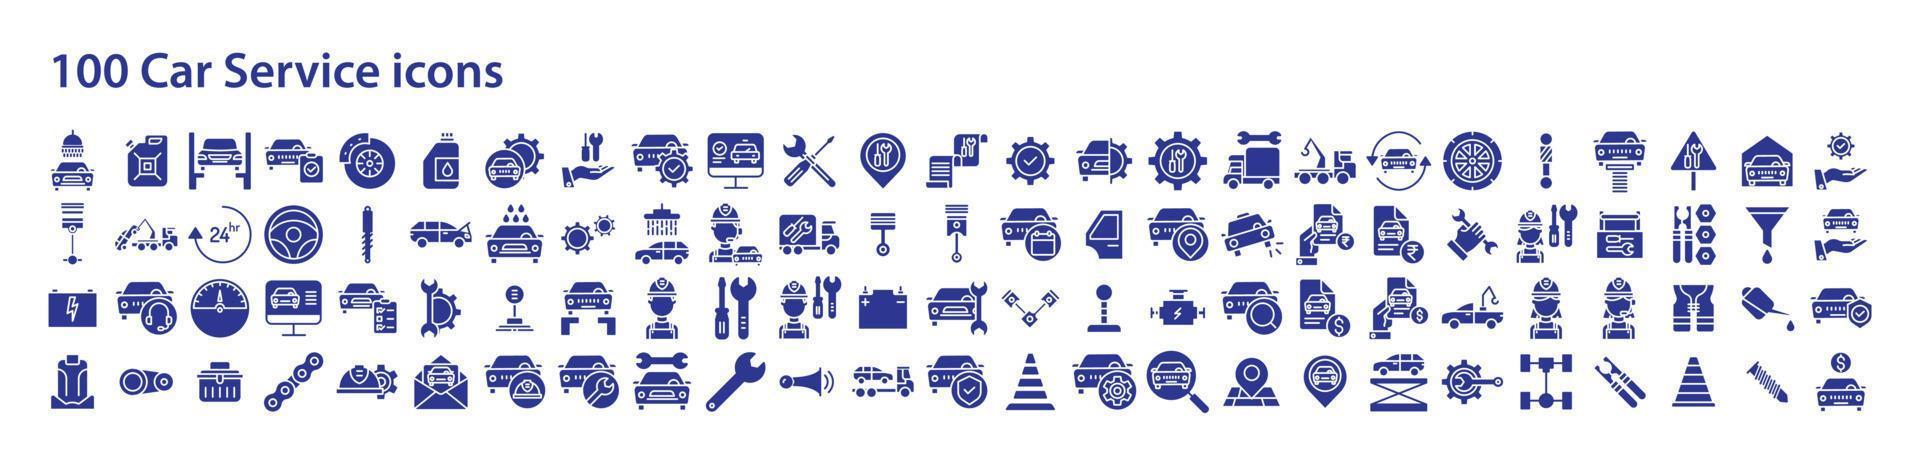 Sammlung von Symbolen im Zusammenhang mit Autoservice und Garage, einschließlich Symbolen wie Batterie, Auto, Techniker, Schraubenschlüssel und mehr. Vektorgrafiken, pixelgenau vektor